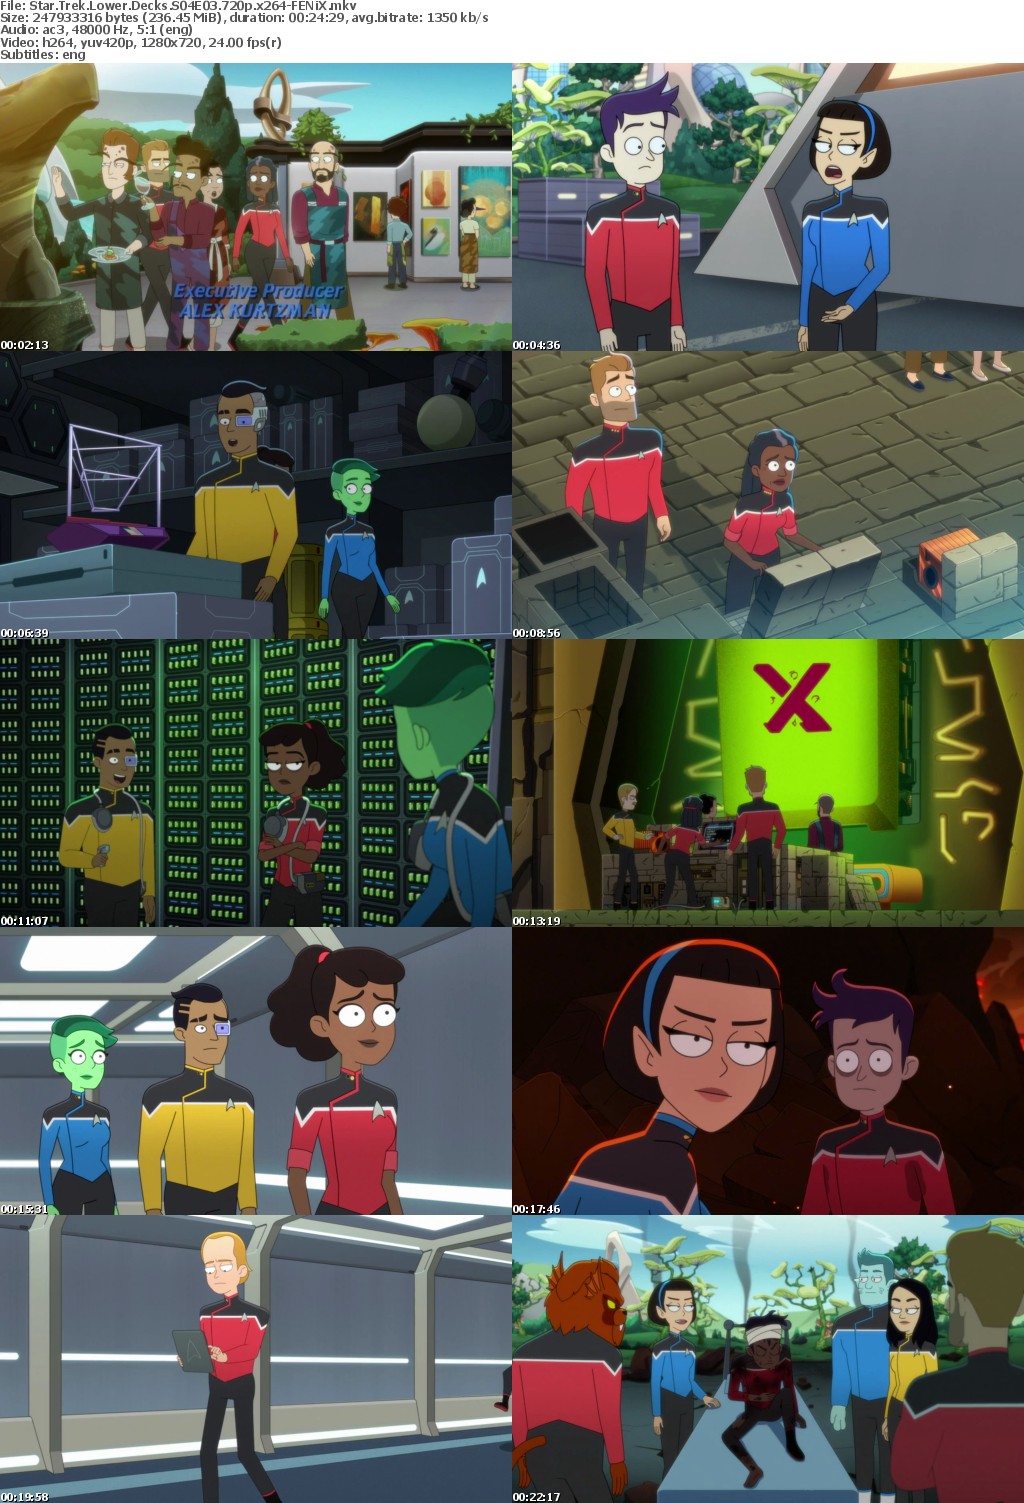 Star Trek Lower Decks S04E03 720p x264-FENiX Saturn5